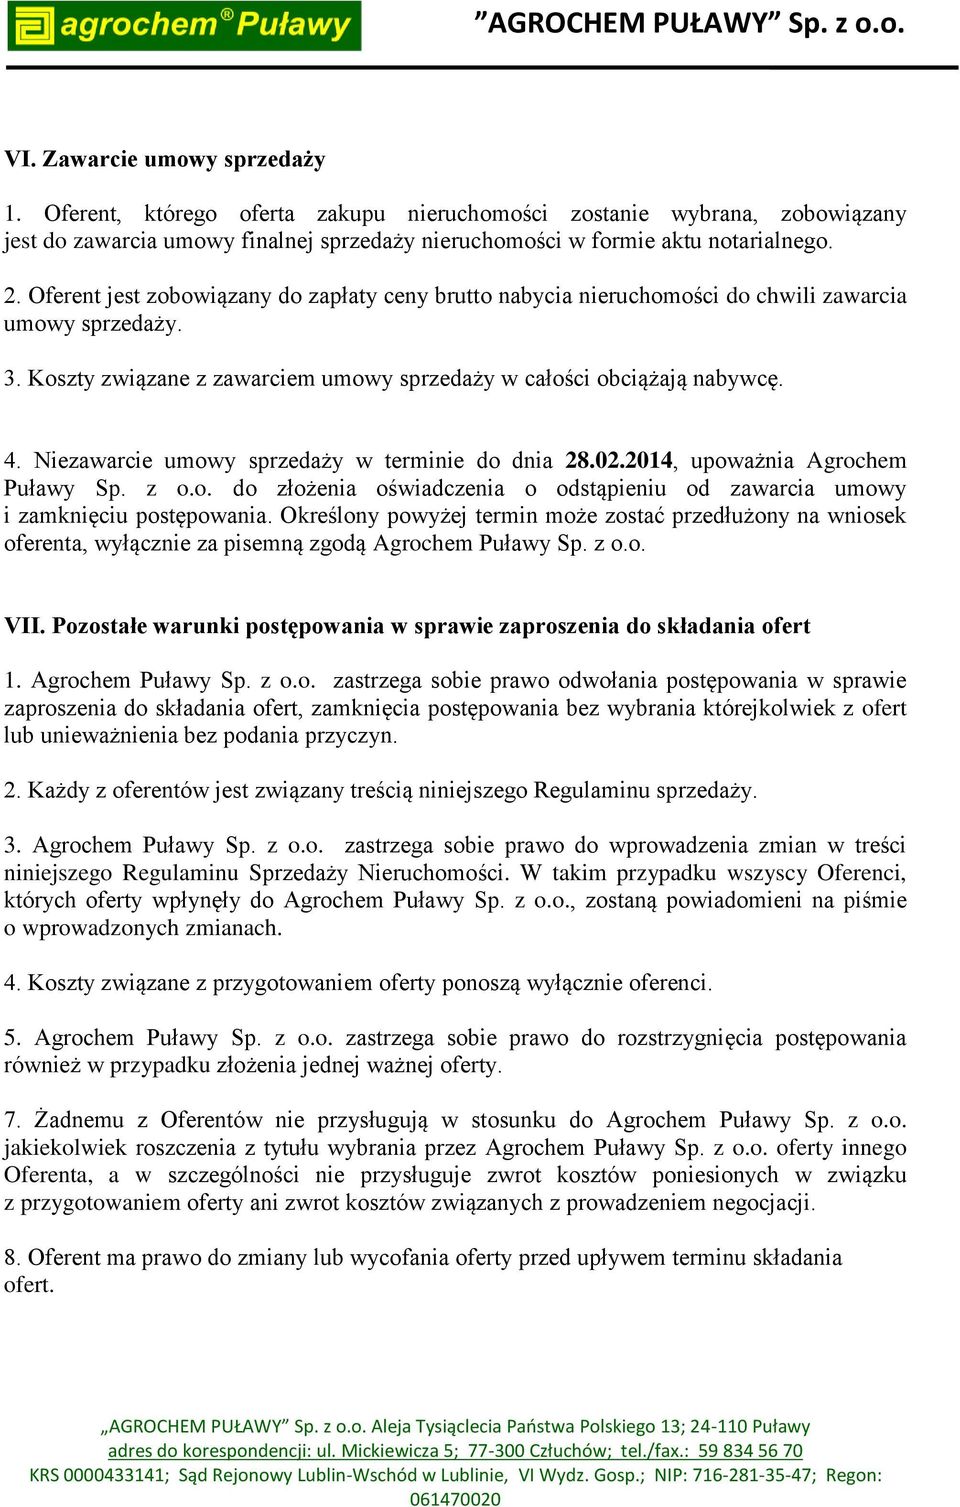 Niezawarcie umowy sprzedaży w terminie do dnia 28.02.2014, upoważnia Agrochem Puławy Sp. z o.o. do złożenia oświadczenia o odstąpieniu od zawarcia umowy i zamknięciu postępowania.